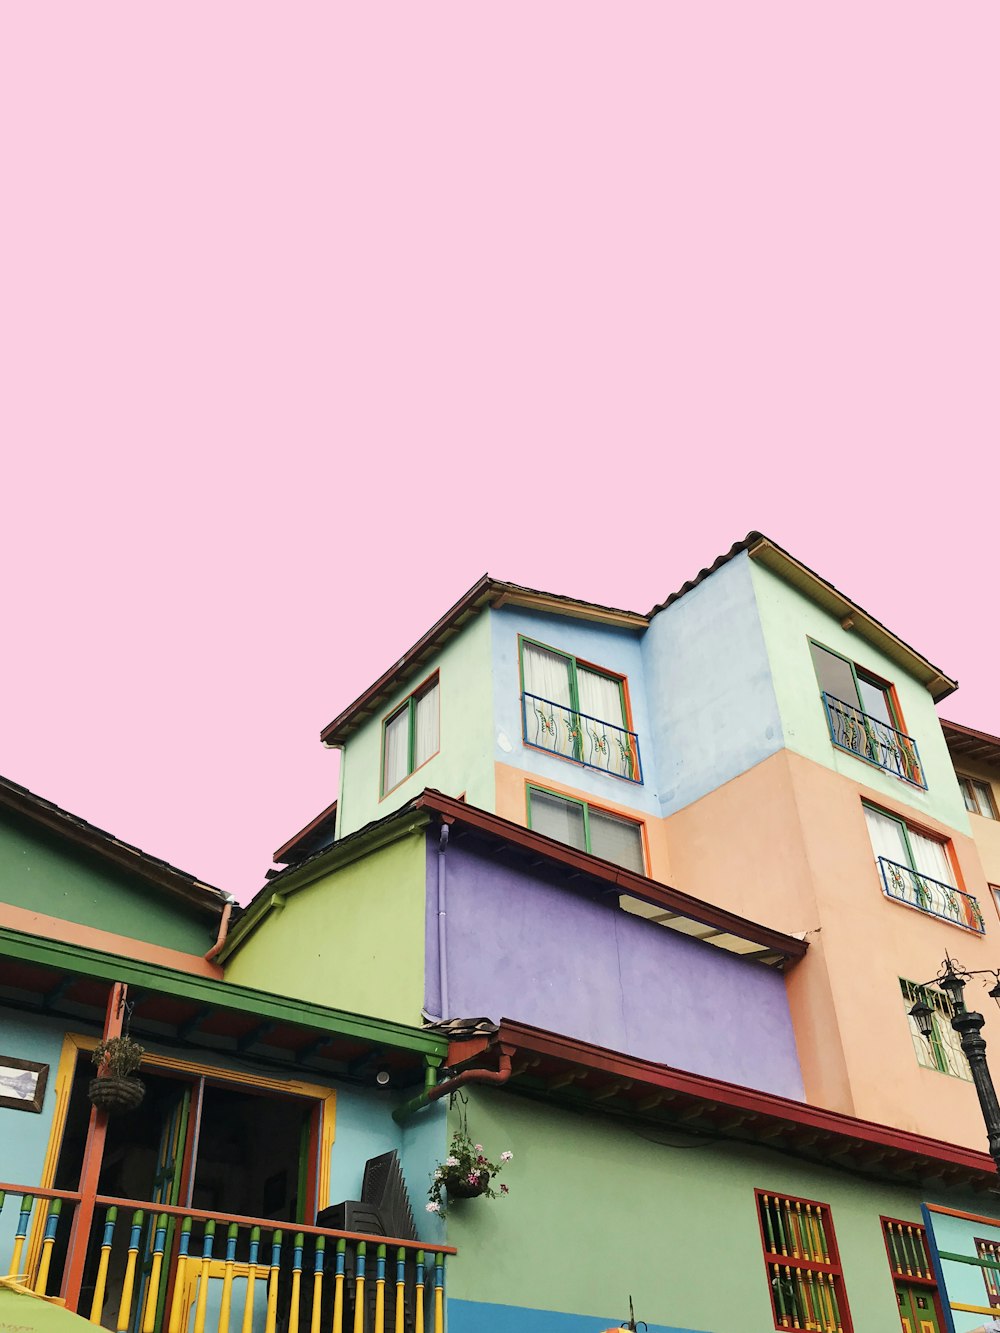 casa multicolore sotto il cielo rosa